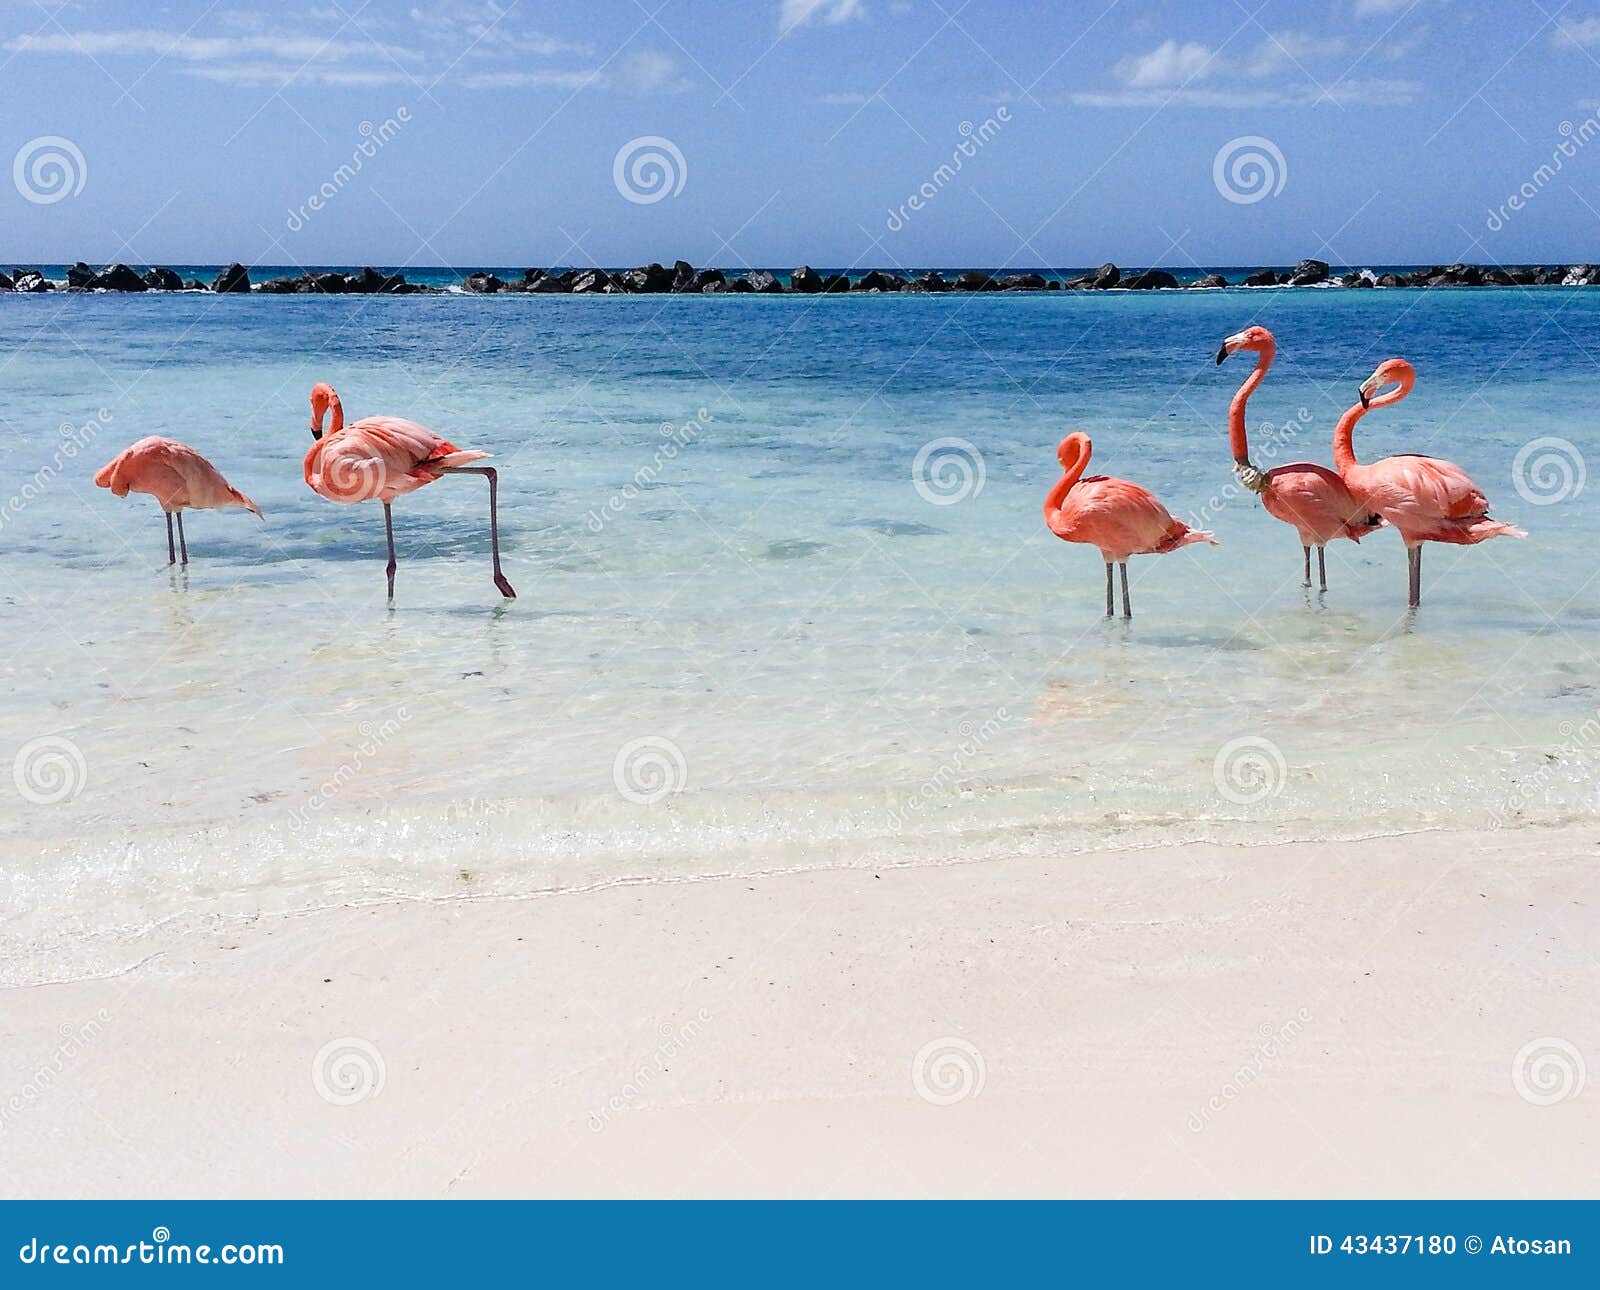 De Flamingo van Aruba stock foto. Image of gekleurd, nederlands - 43437180